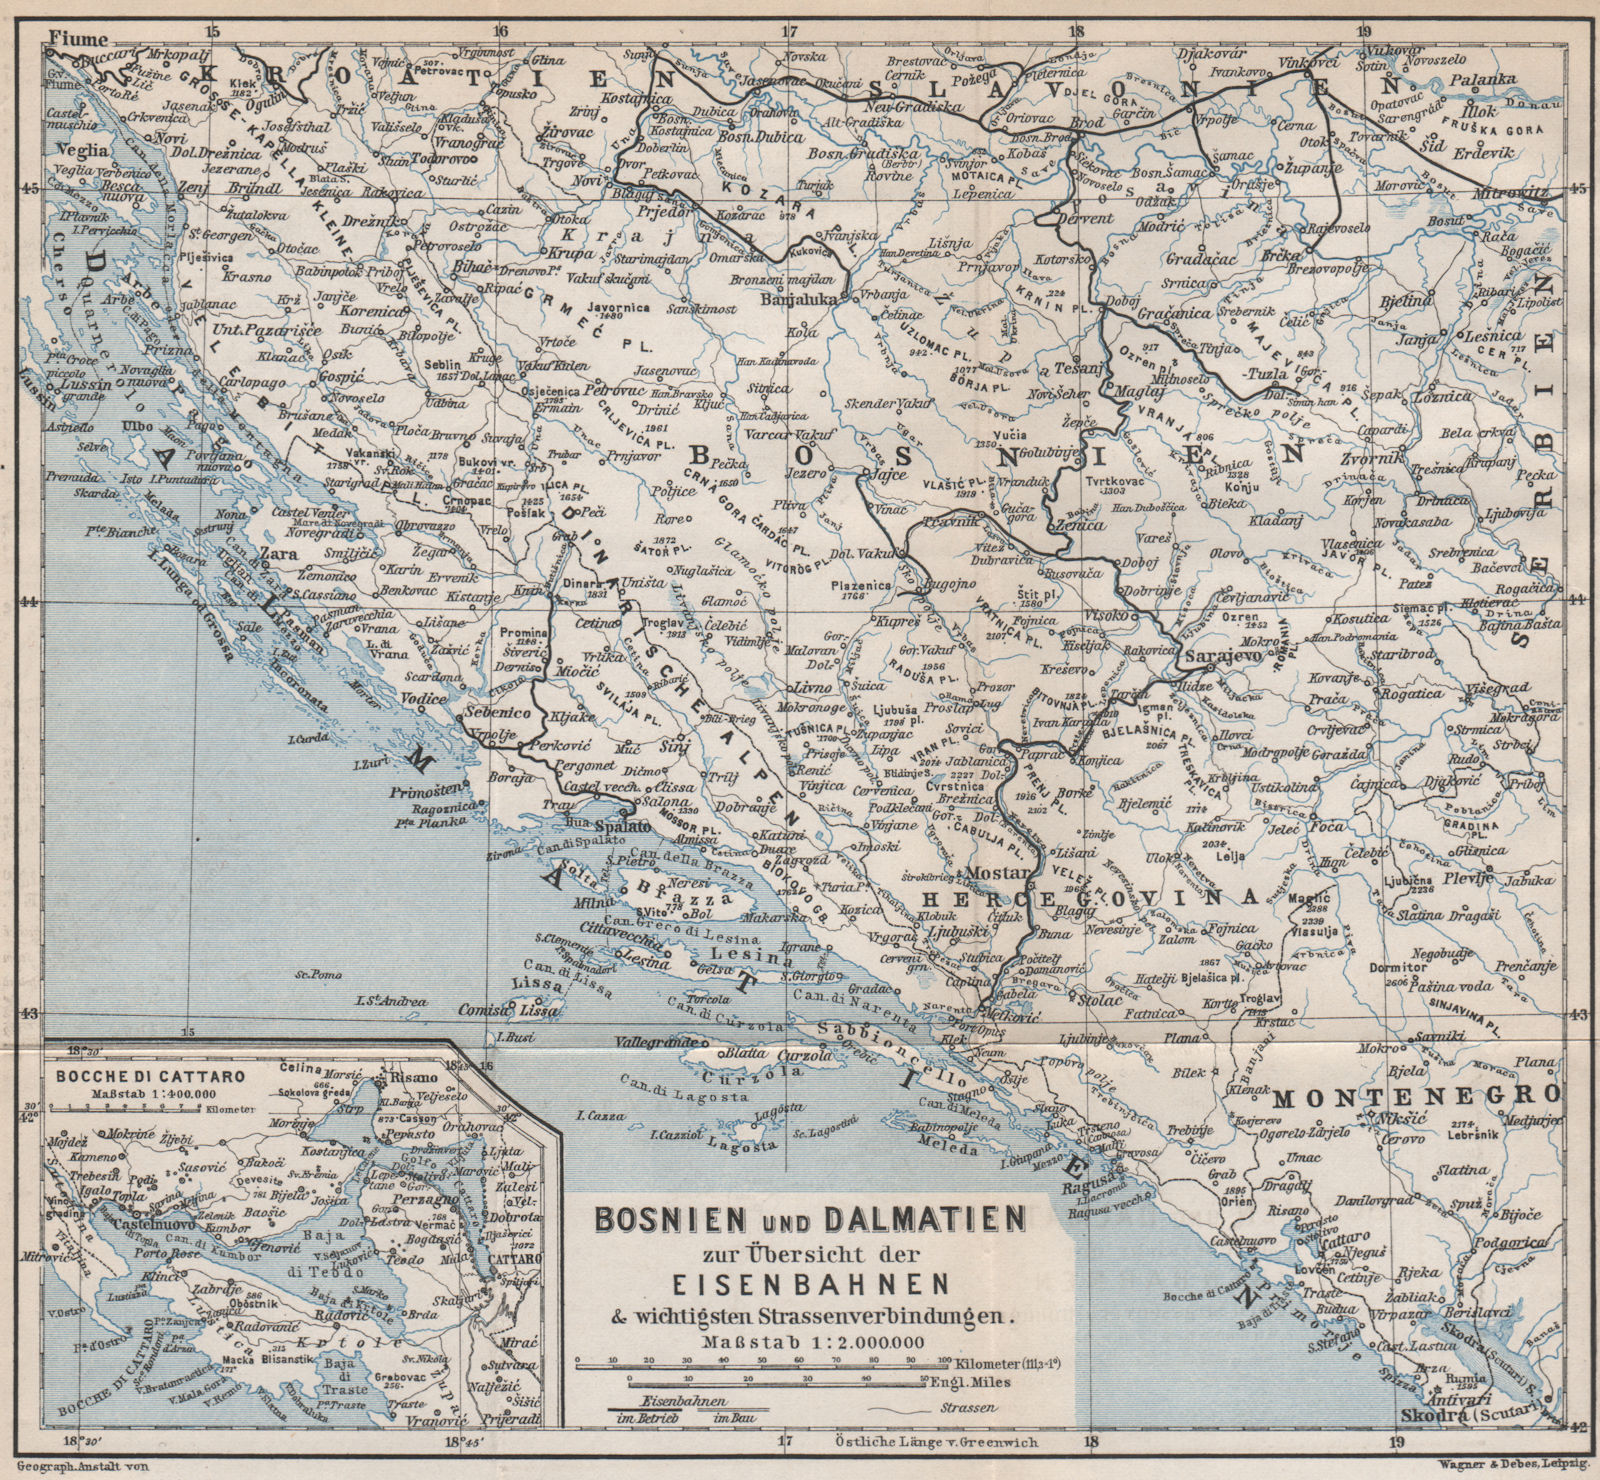 DALMATIA BOSNIA Croatia Montenegro. Railways. Gulf of Kotor/Cattaro 1896 map